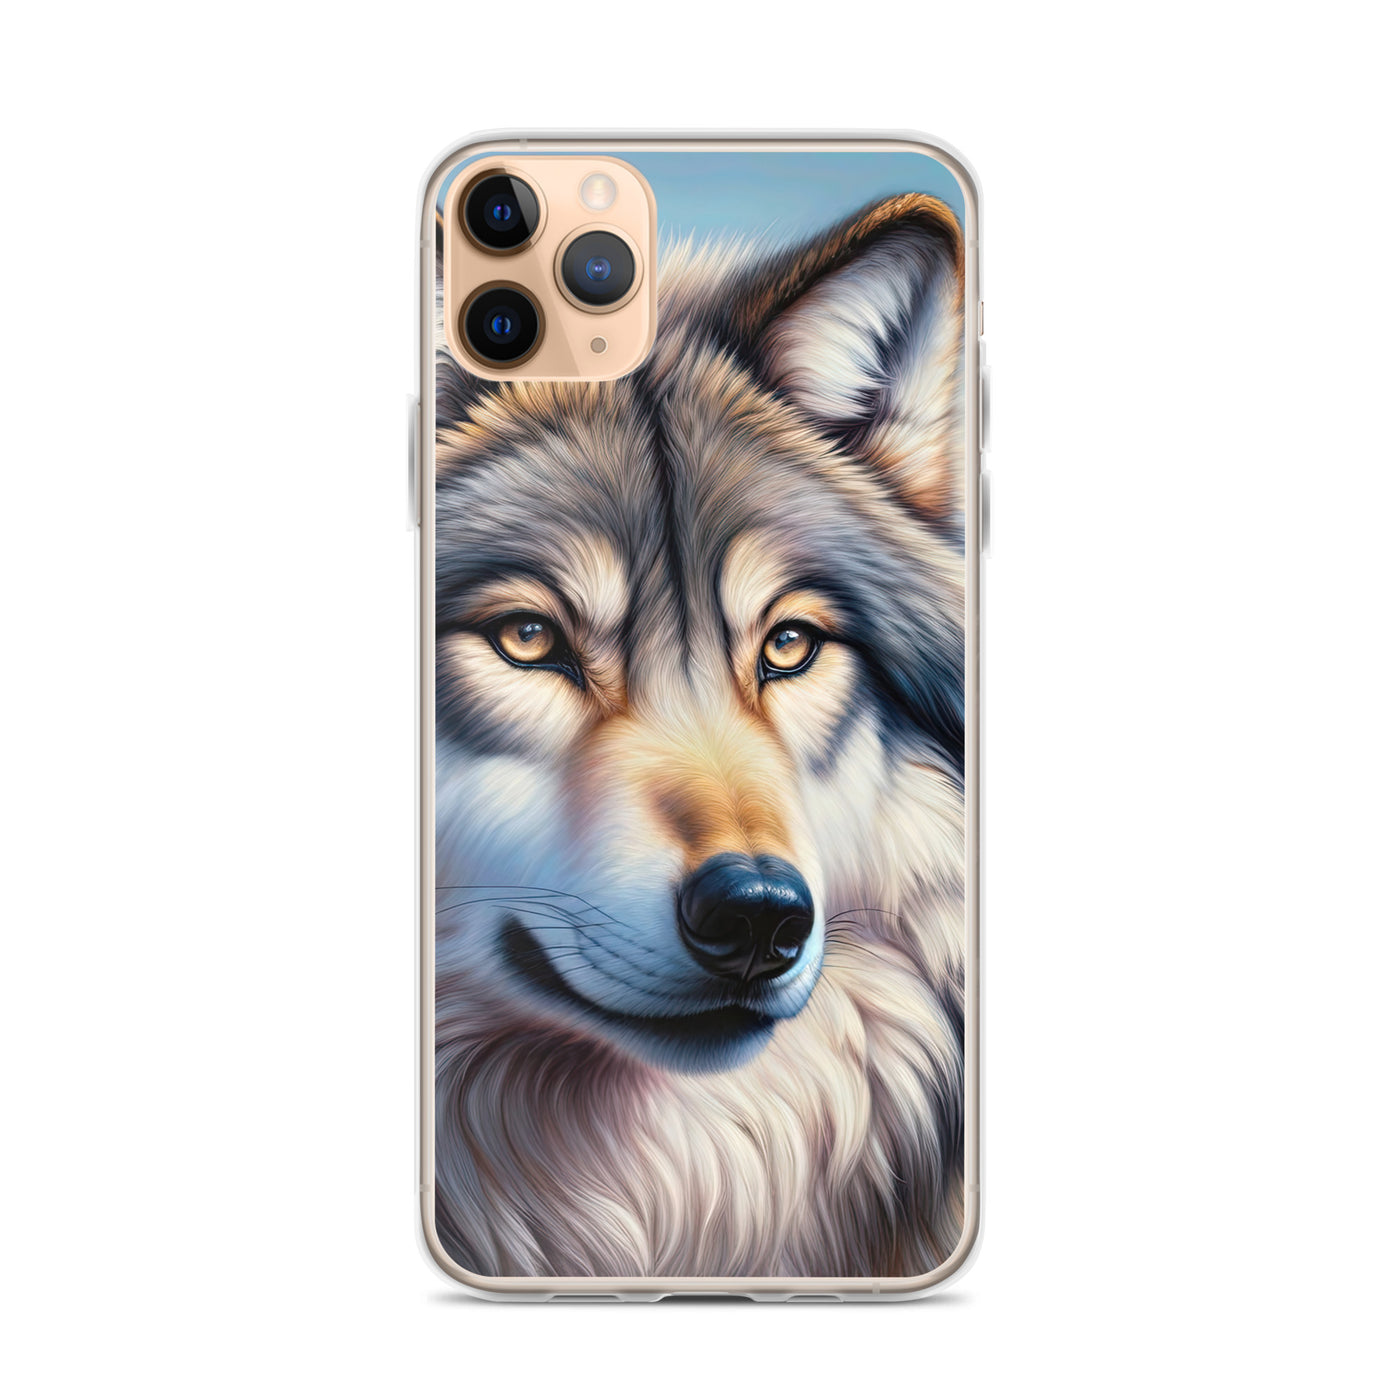 Ölgemäldeporträt eines majestätischen Wolfes mit intensiven Augen in der Berglandschaft (AN) - iPhone Schutzhülle (durchsichtig) xxx yyy zzz iPhone 11 Pro Max